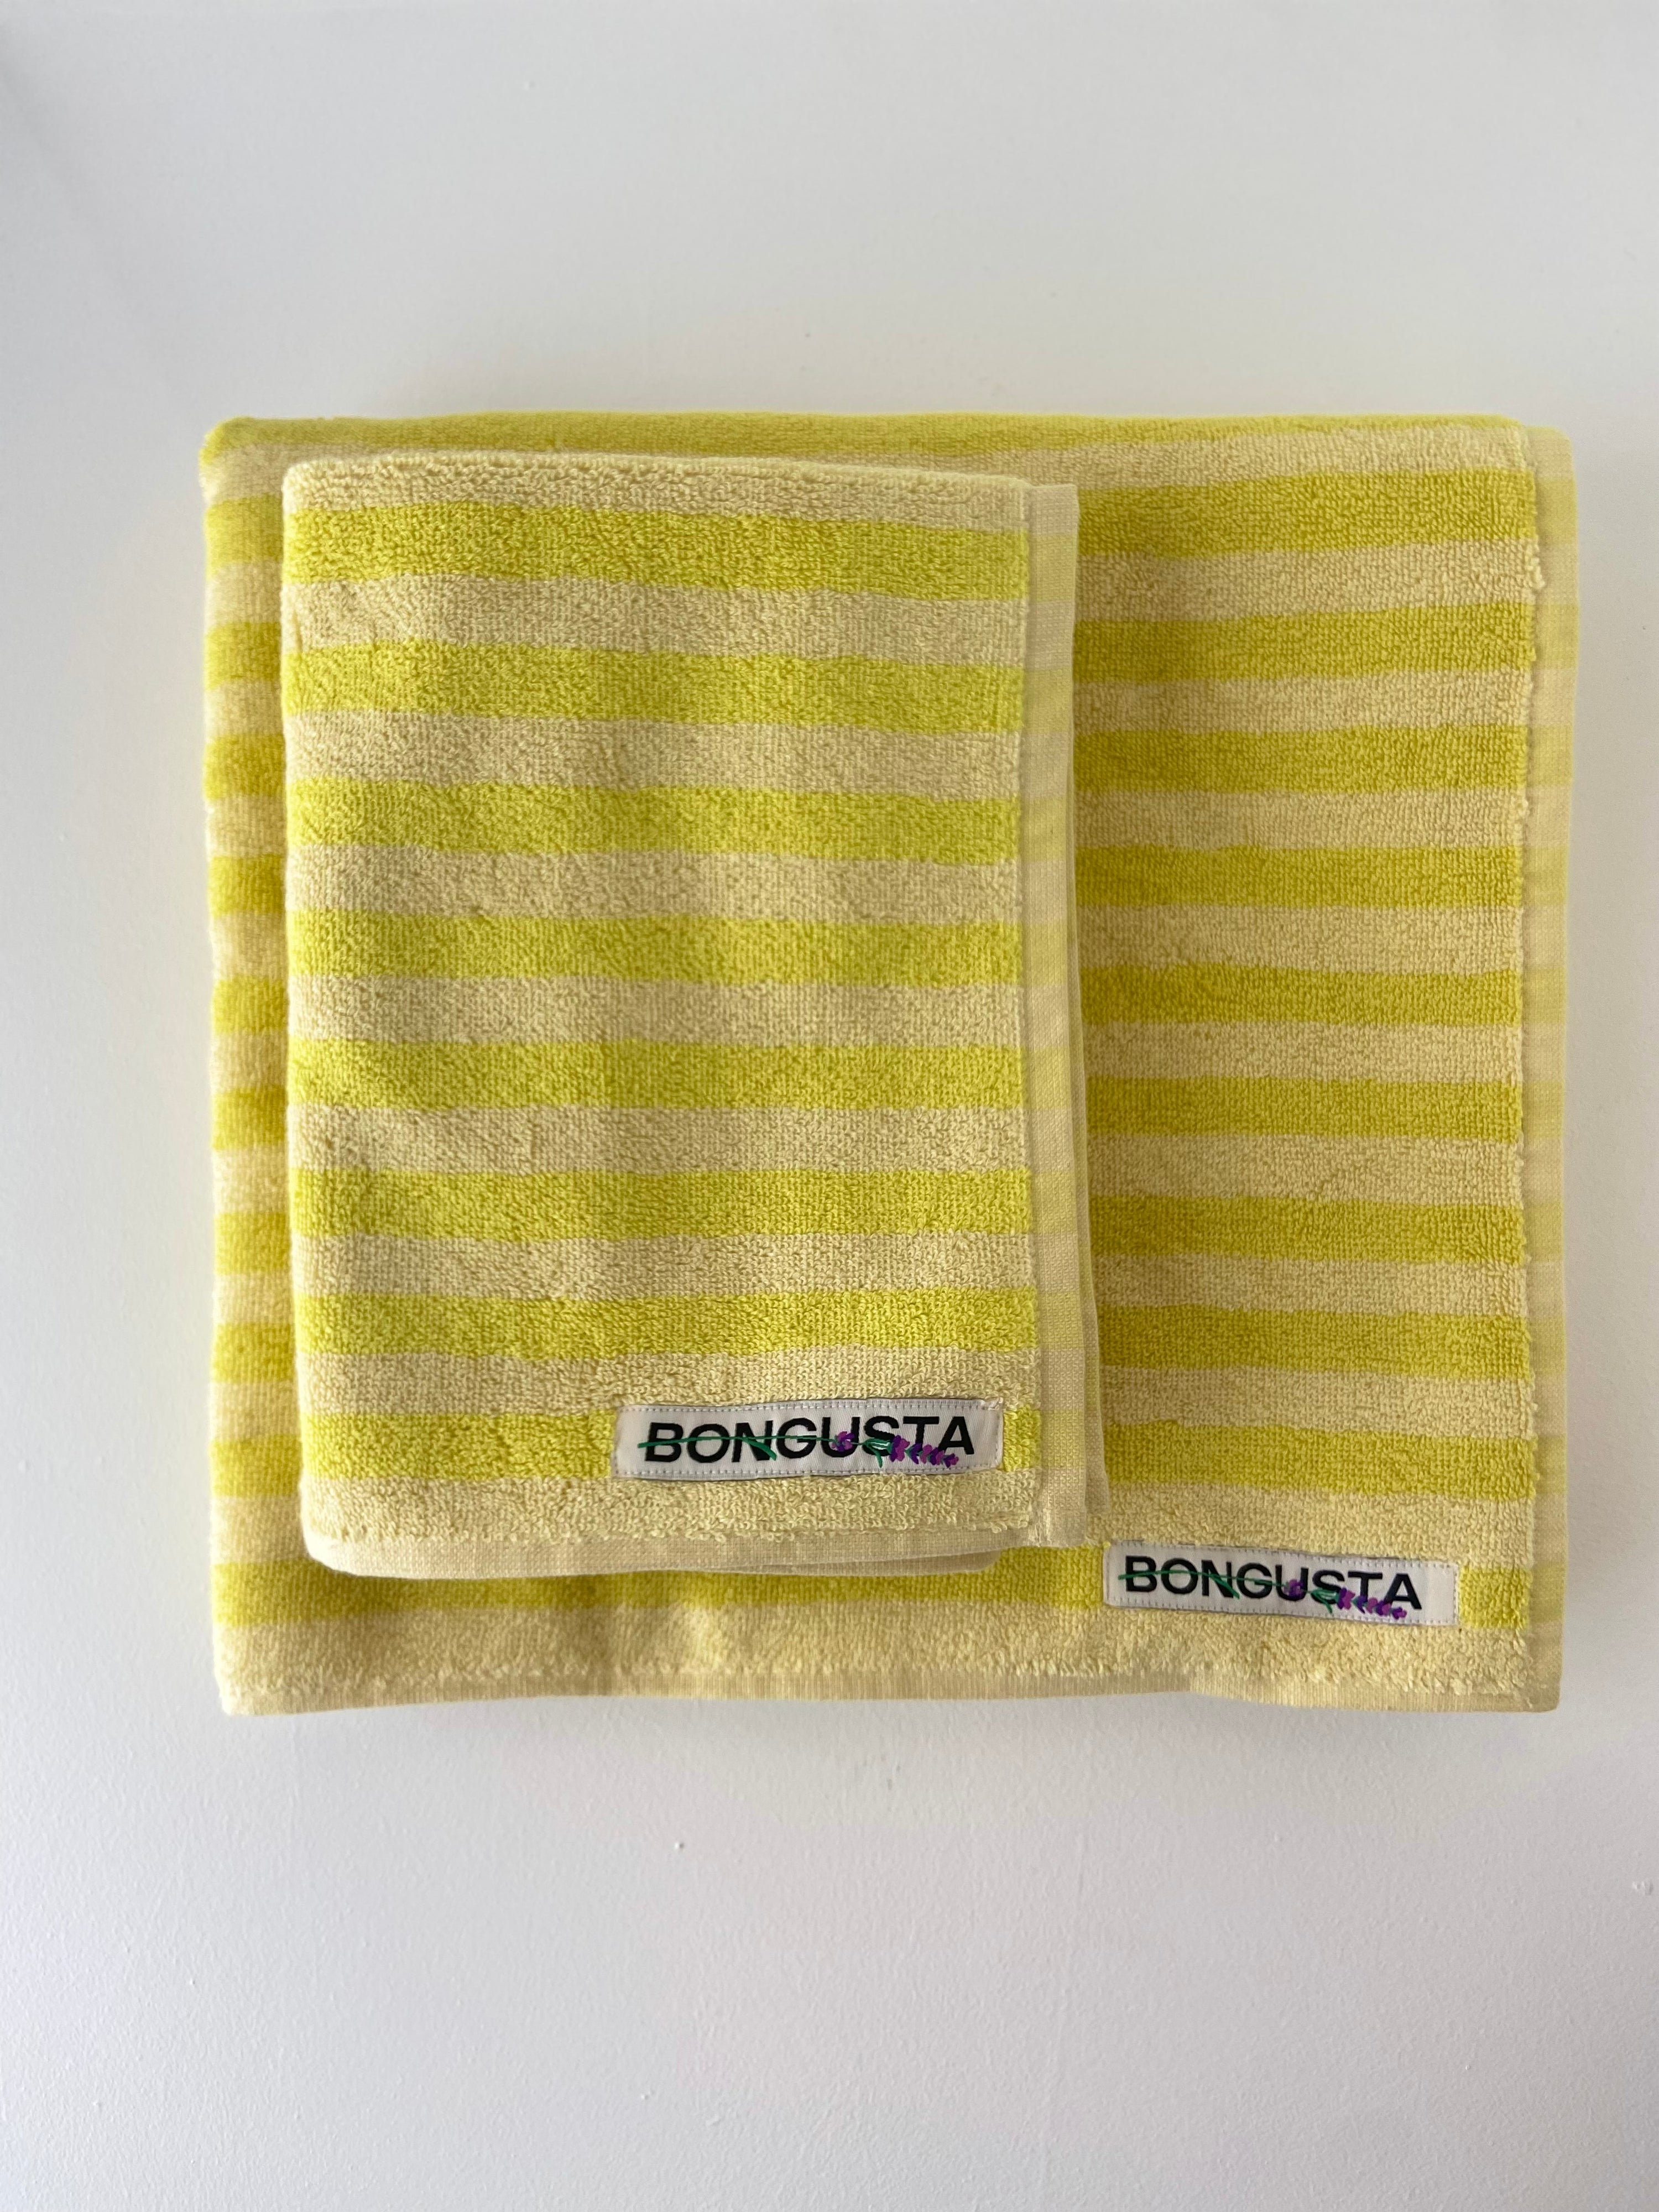 Naram towels small, Pristine & Neon yellow